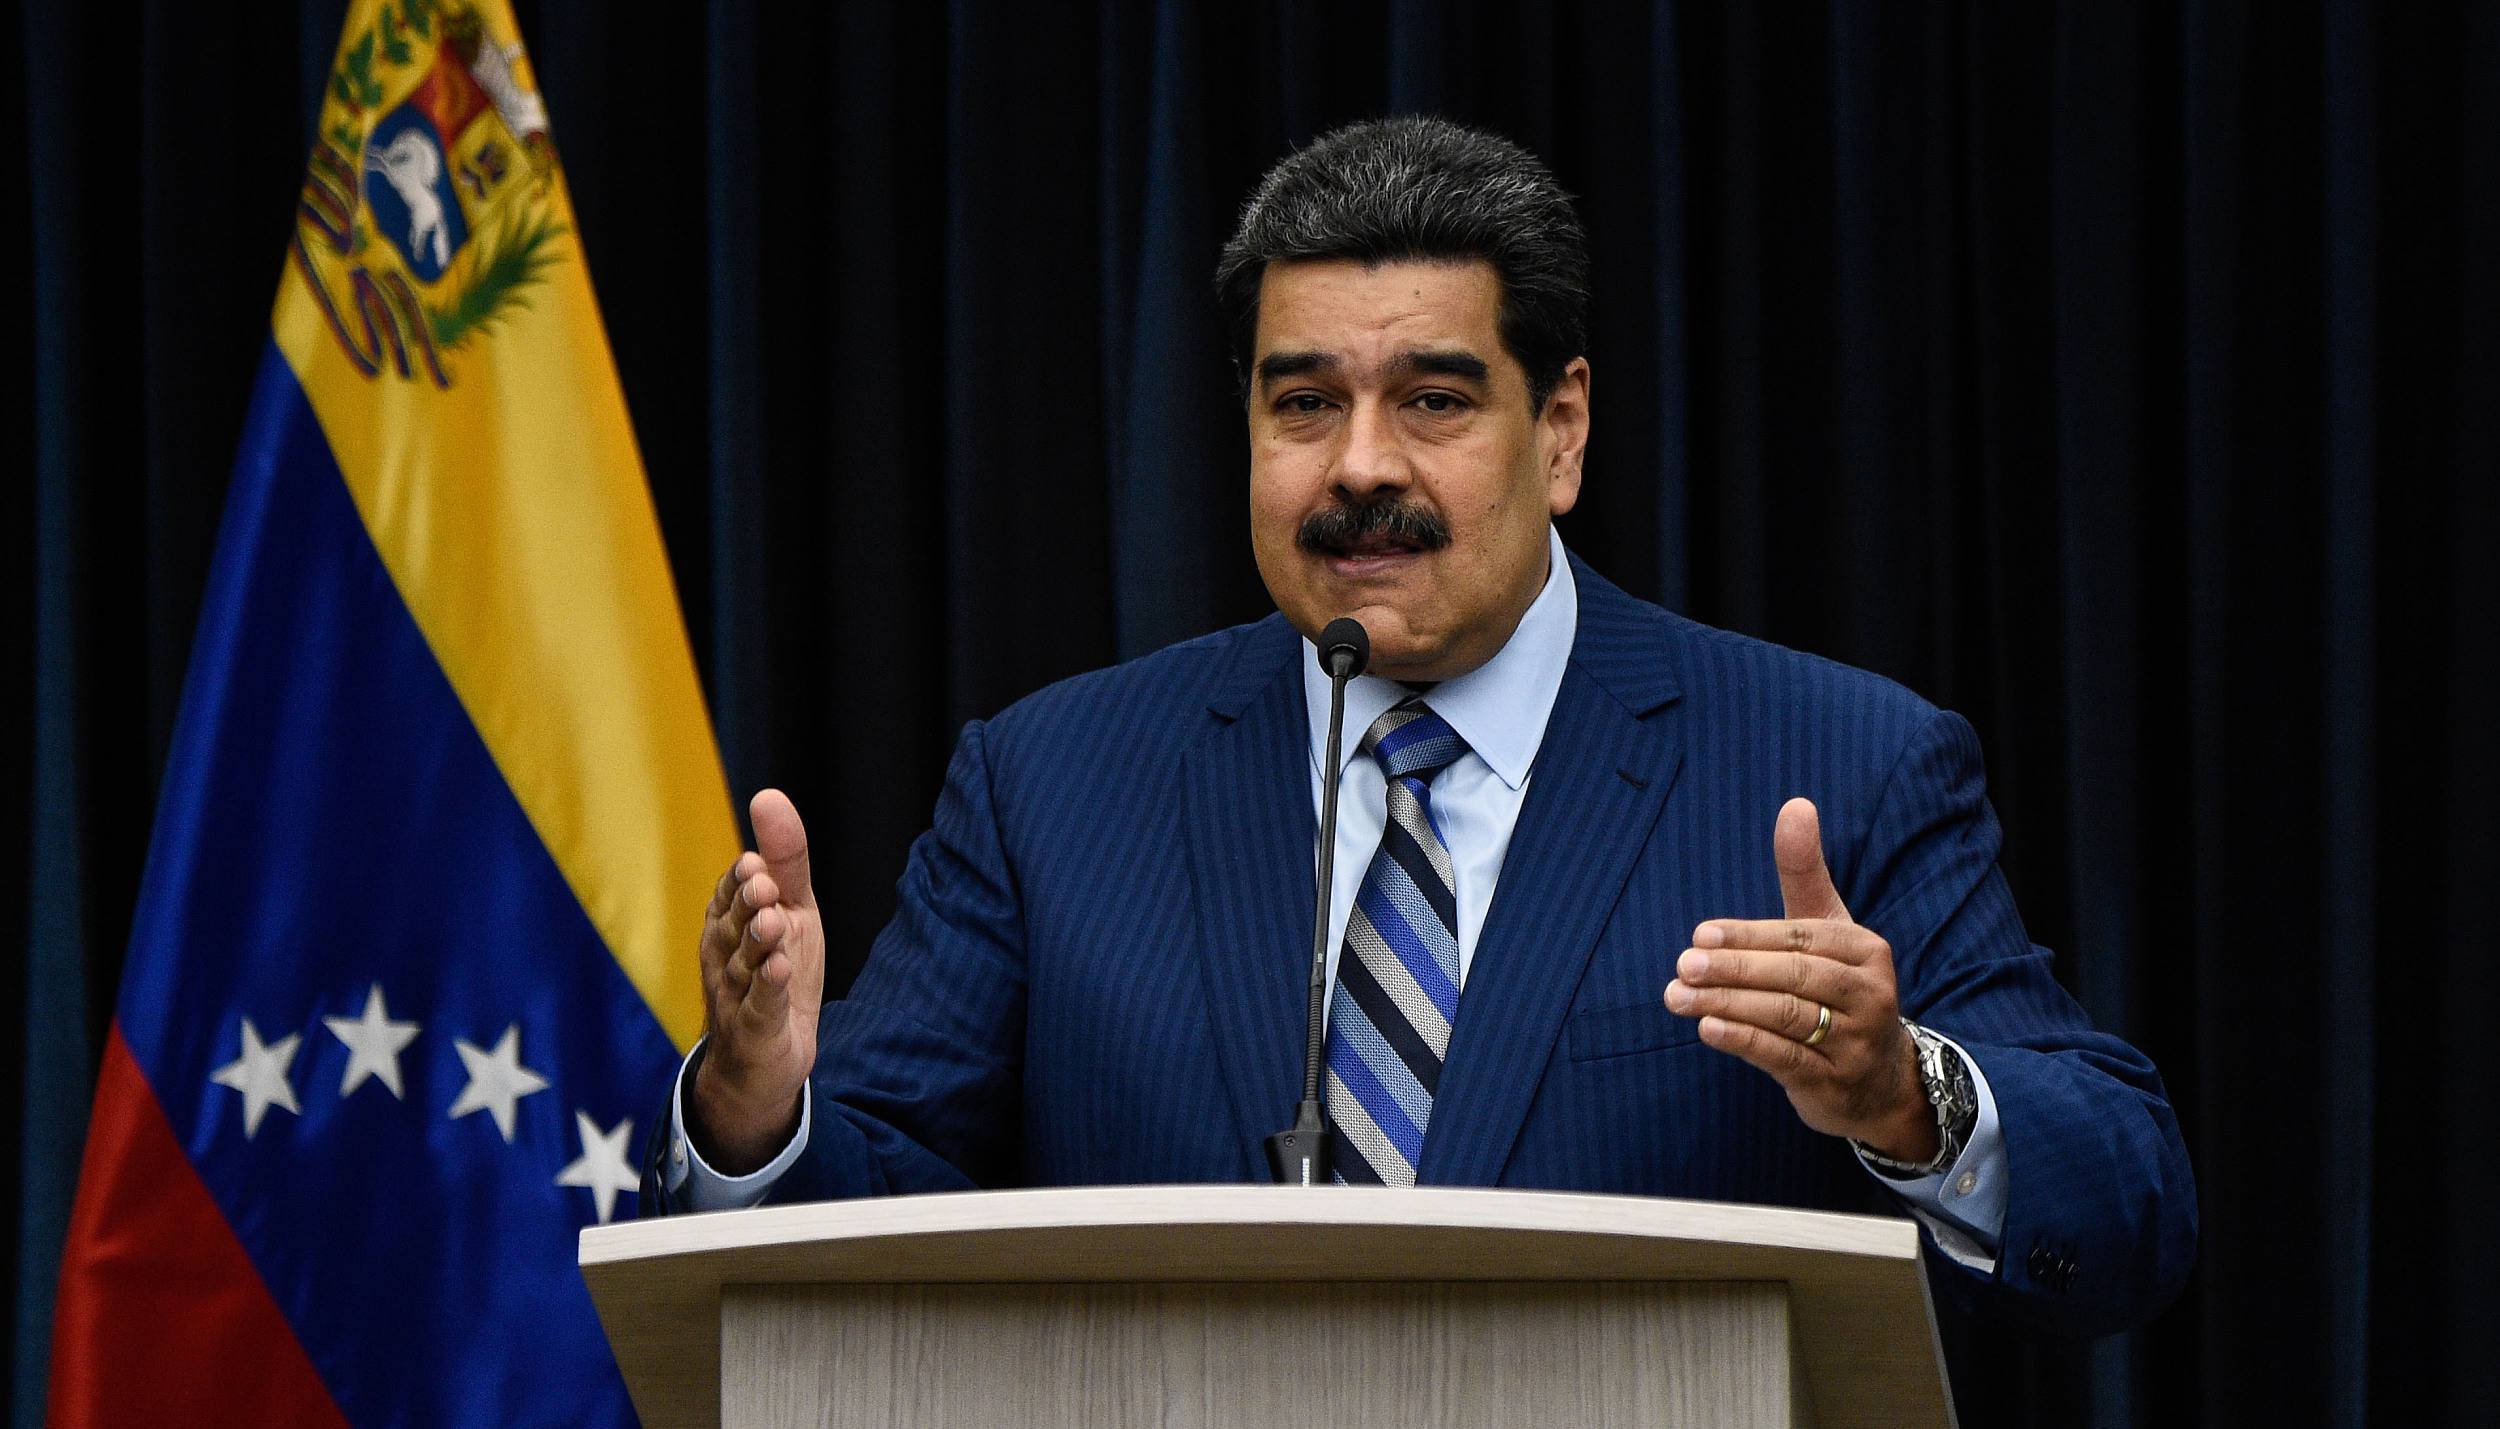 利马集团质疑马杜罗连任合法性,委内瑞拉谴责